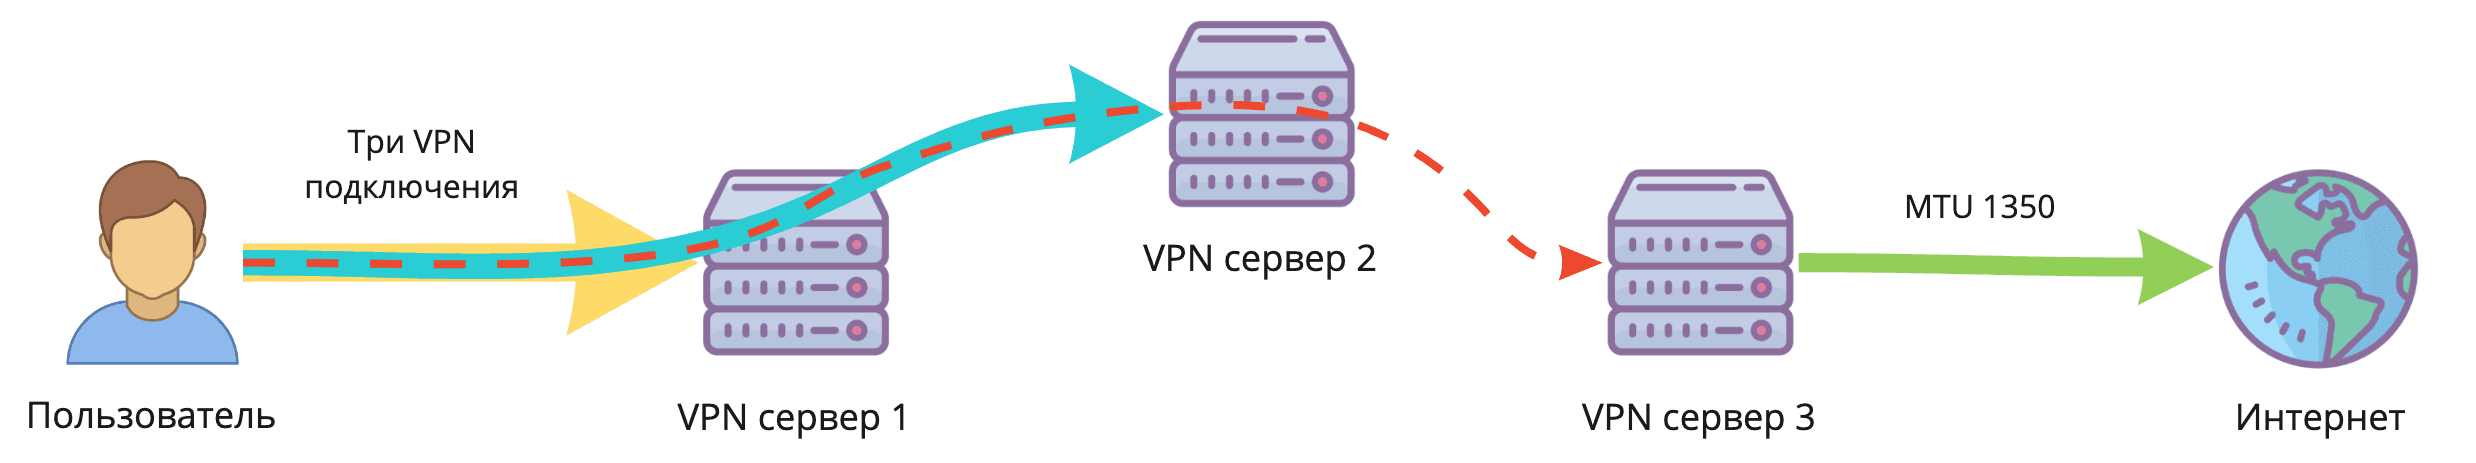 Двойной VPN в один клик. Как легко разделить IP-адрес точки входа и выхода - 4